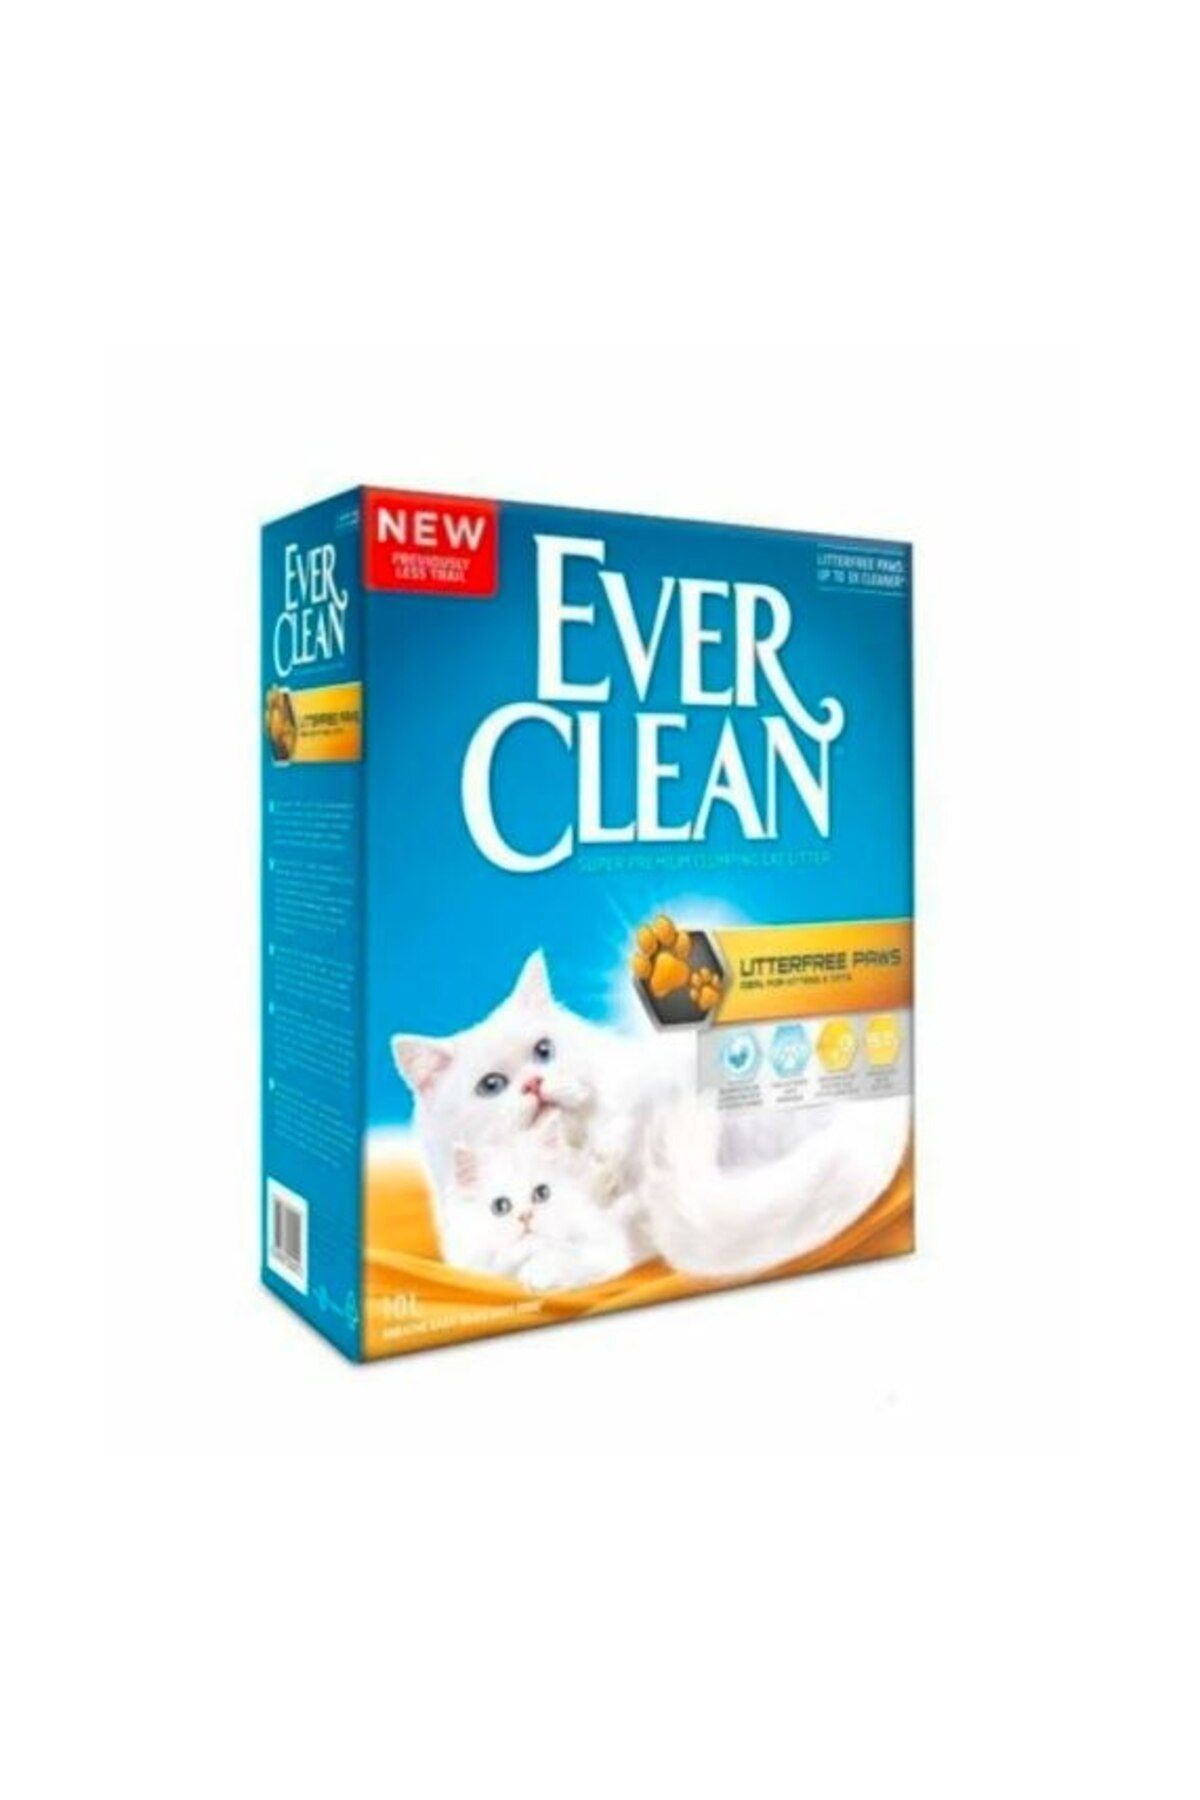 Ever Clean Litterfree Paws Iz Birakmayan Kalın Taneli Topaklaşan Kedi Kumu 10 L